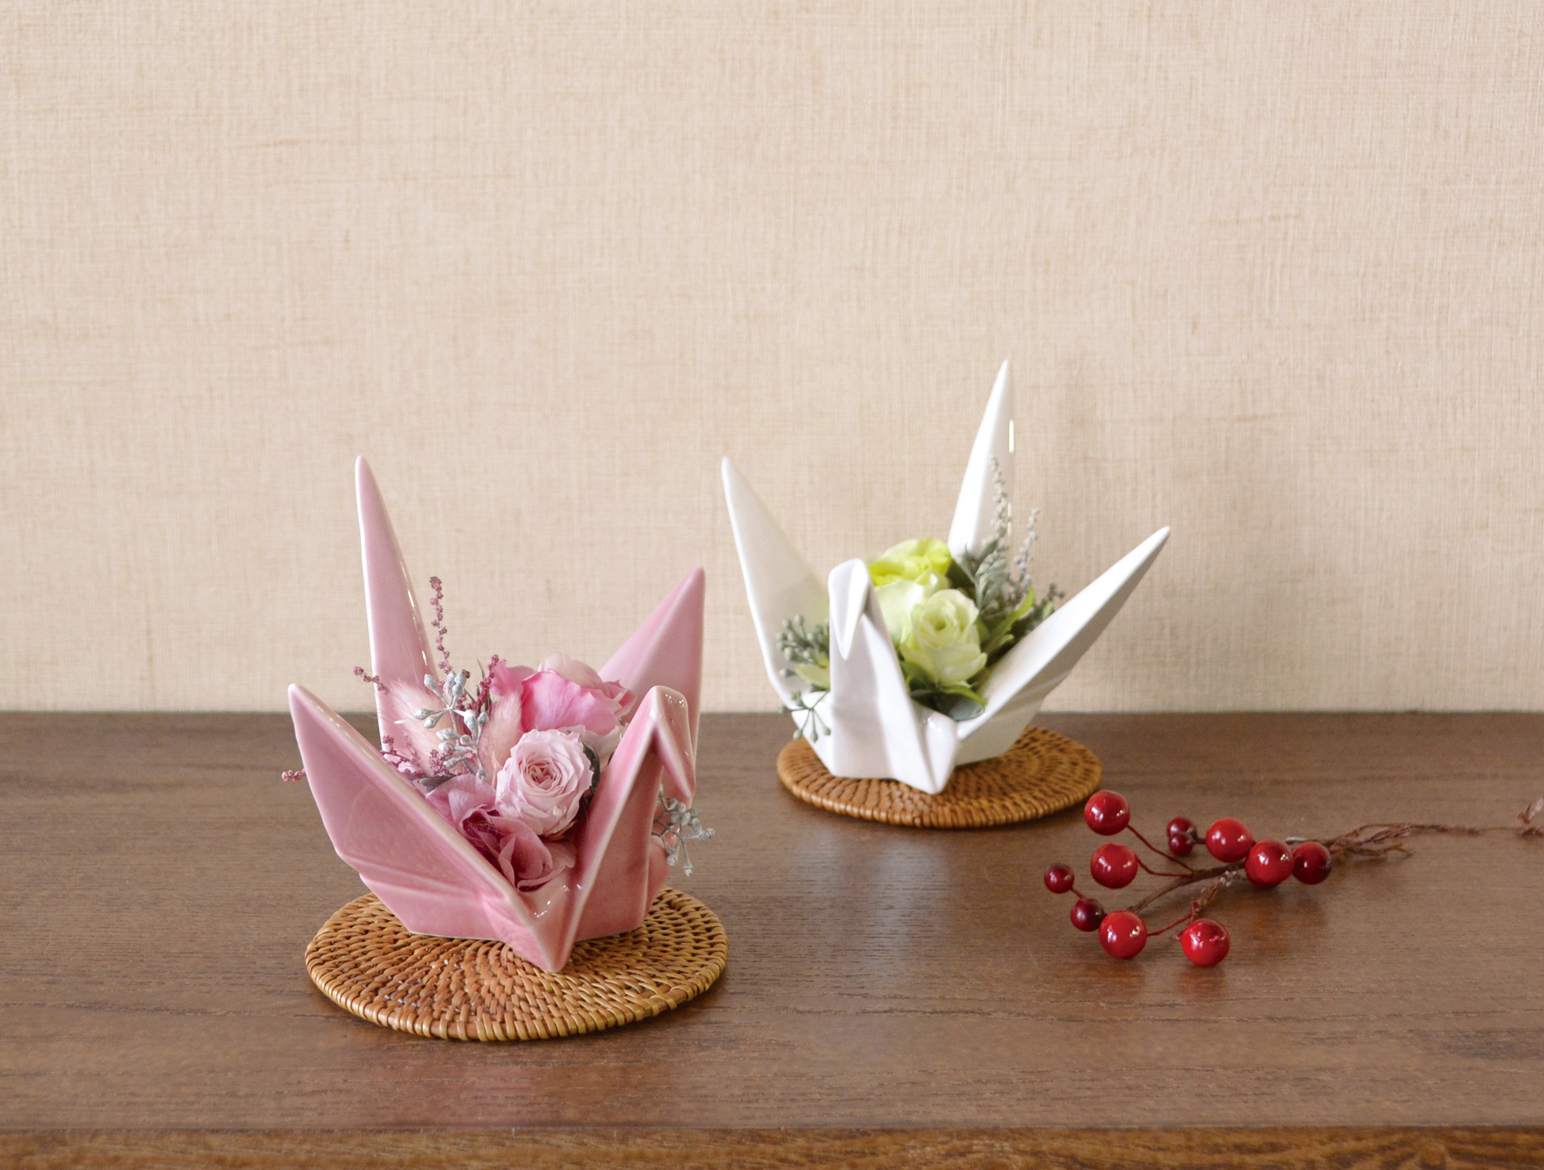 日本の伝統分化 鶴の折り紙 を陶器で柔らかく表現しました プリザの教室やギフトにぴったりです 株式会社ケー イー アイ